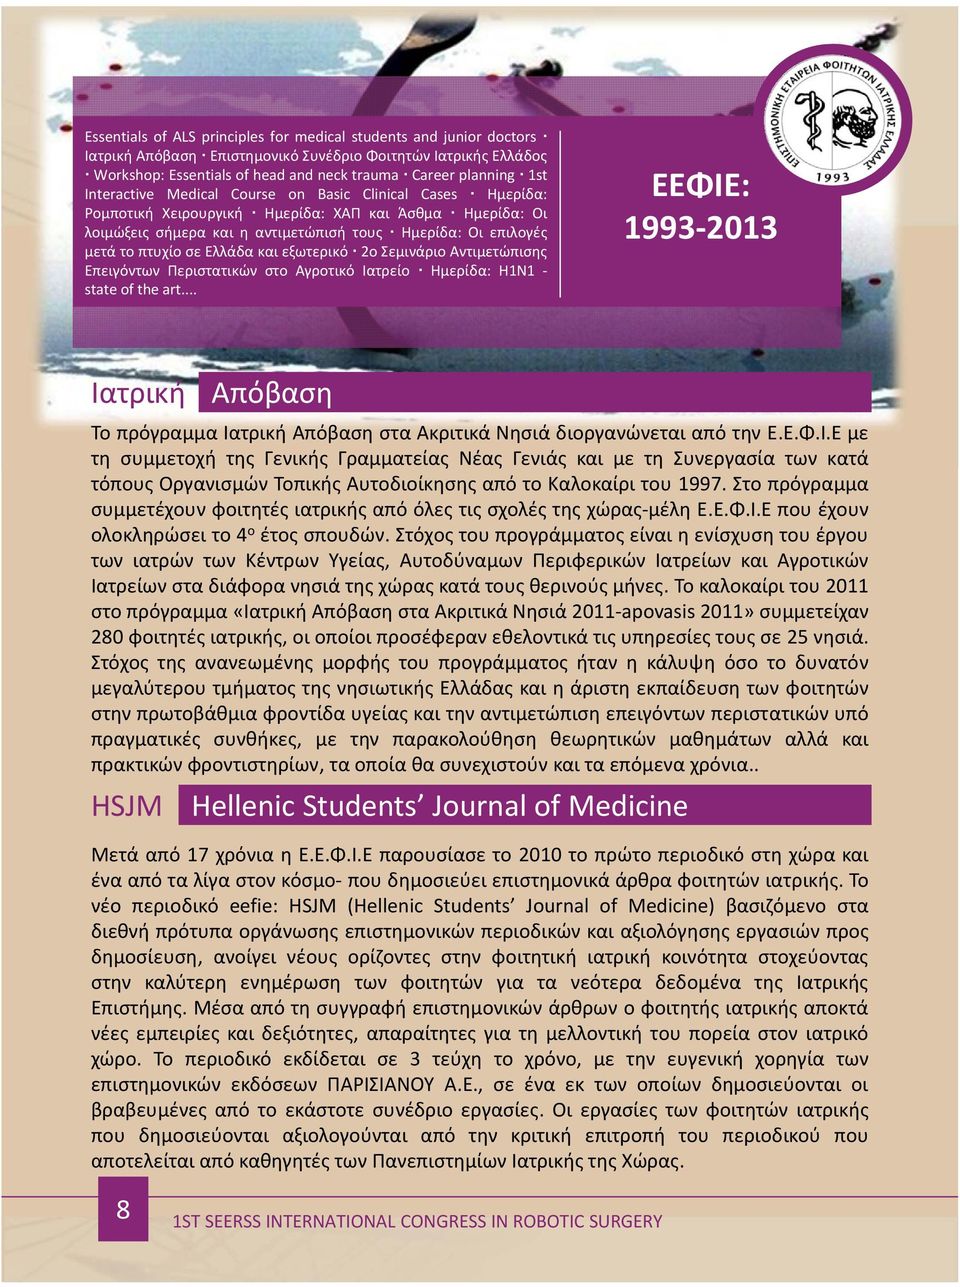 Ελλάδα και εξωτερικό 2ο Σεμινάριο Αντιμετώπισης Επειγόντων Περιστατικών στο Αγροτικό Ιατρείο Ημερίδα: H1N1 state of the art.